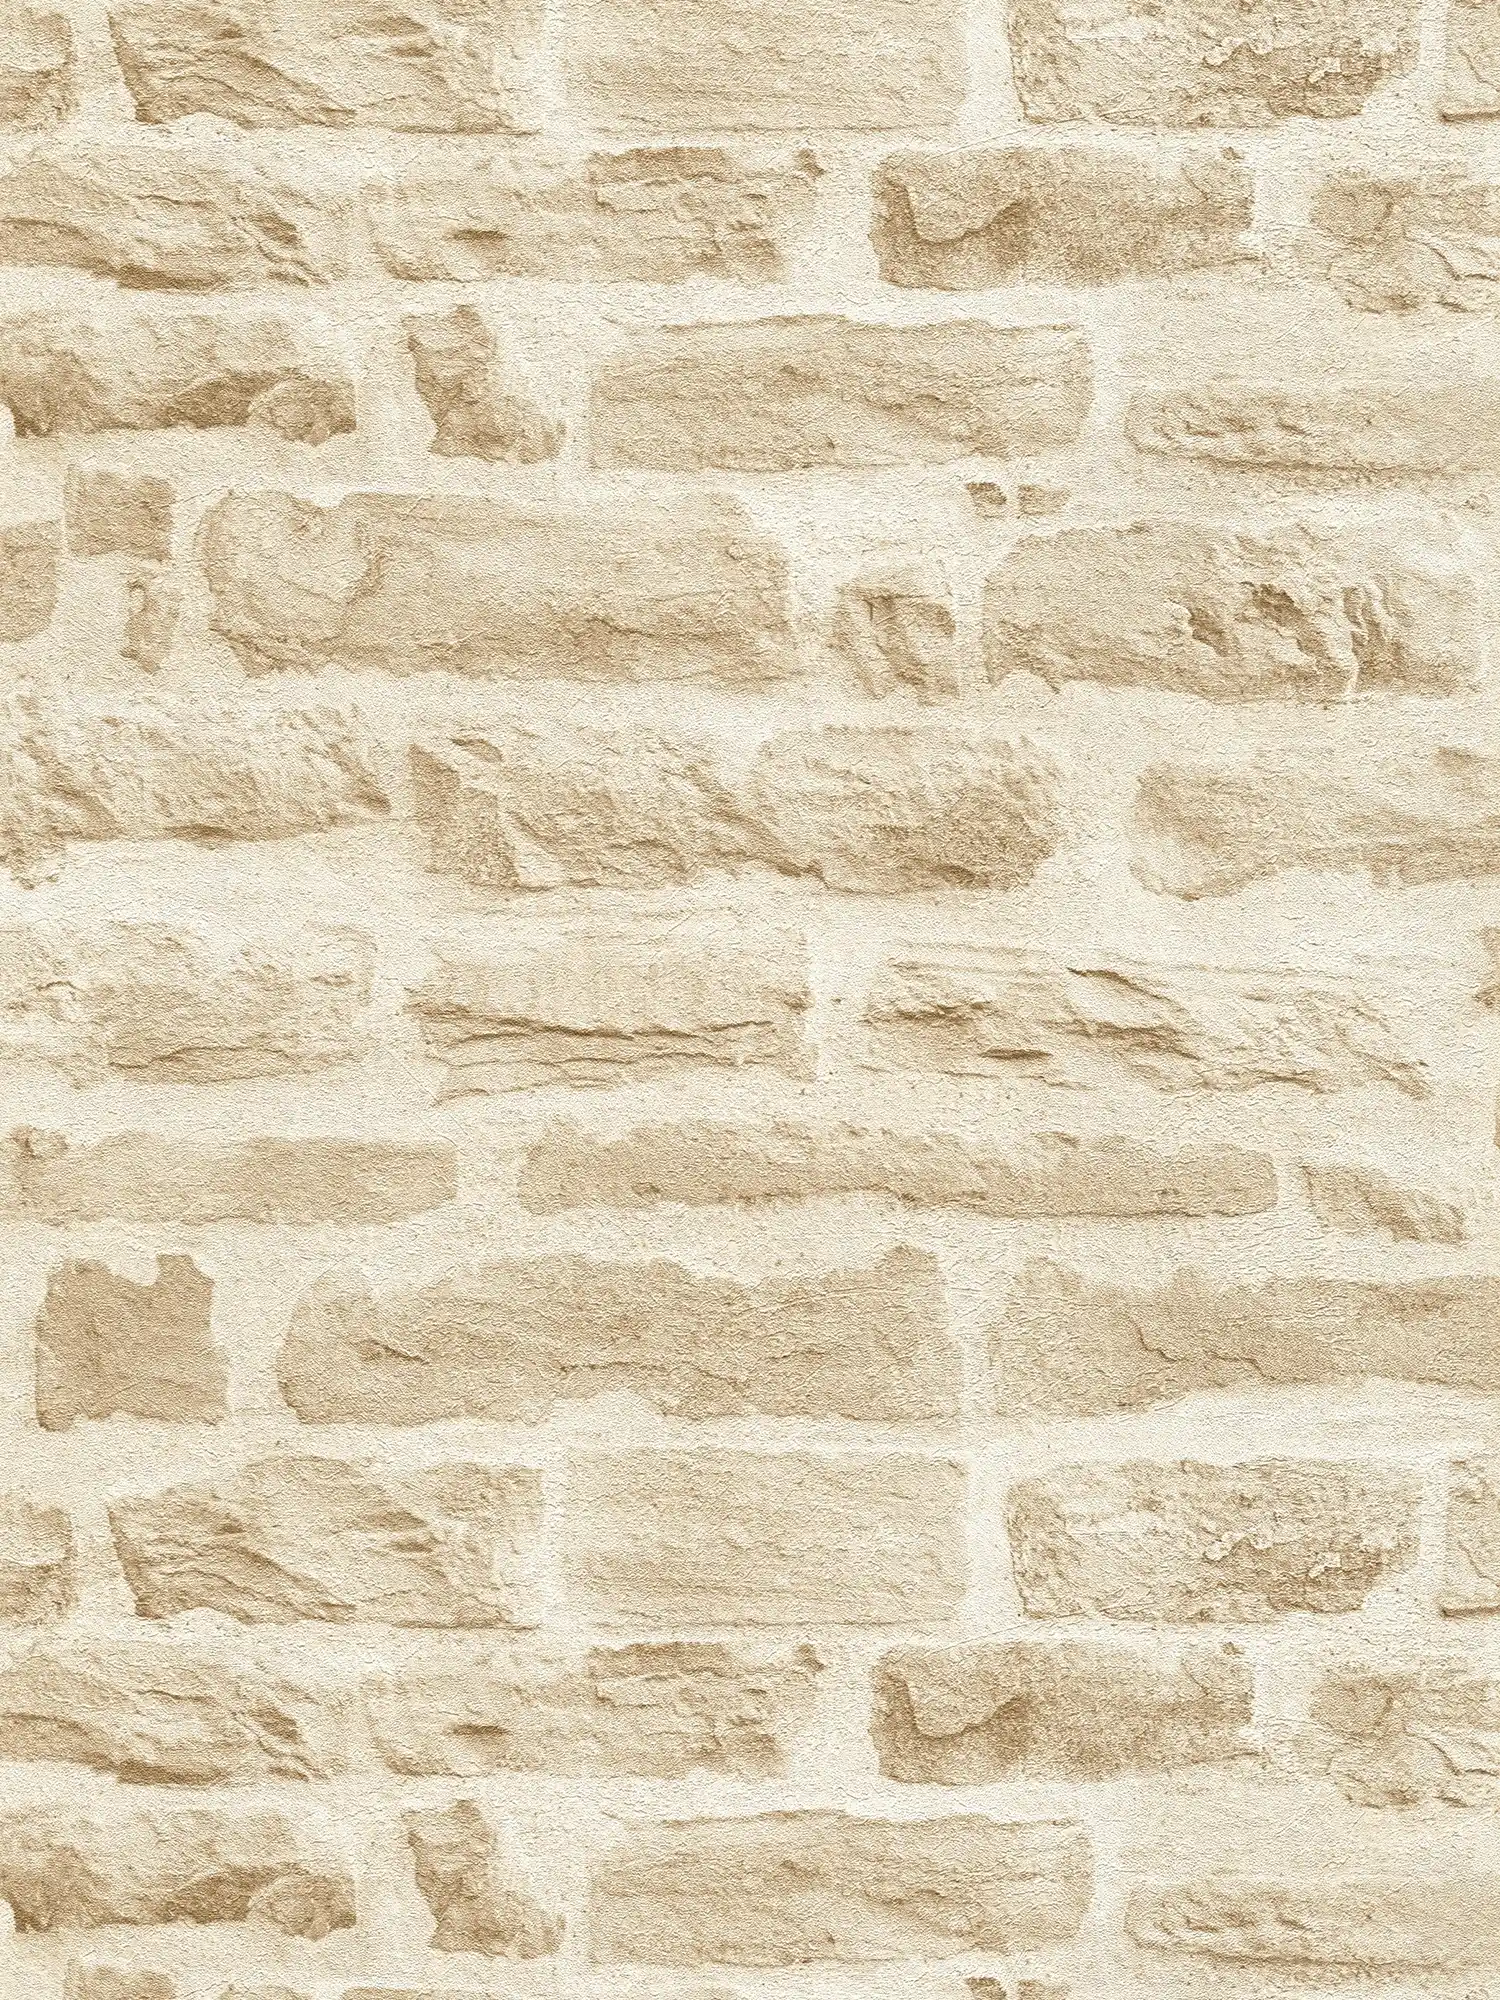 Carta da parati in tessuto non tessuto beige chiaro con aspetto di pietra naturale - beige, crema
